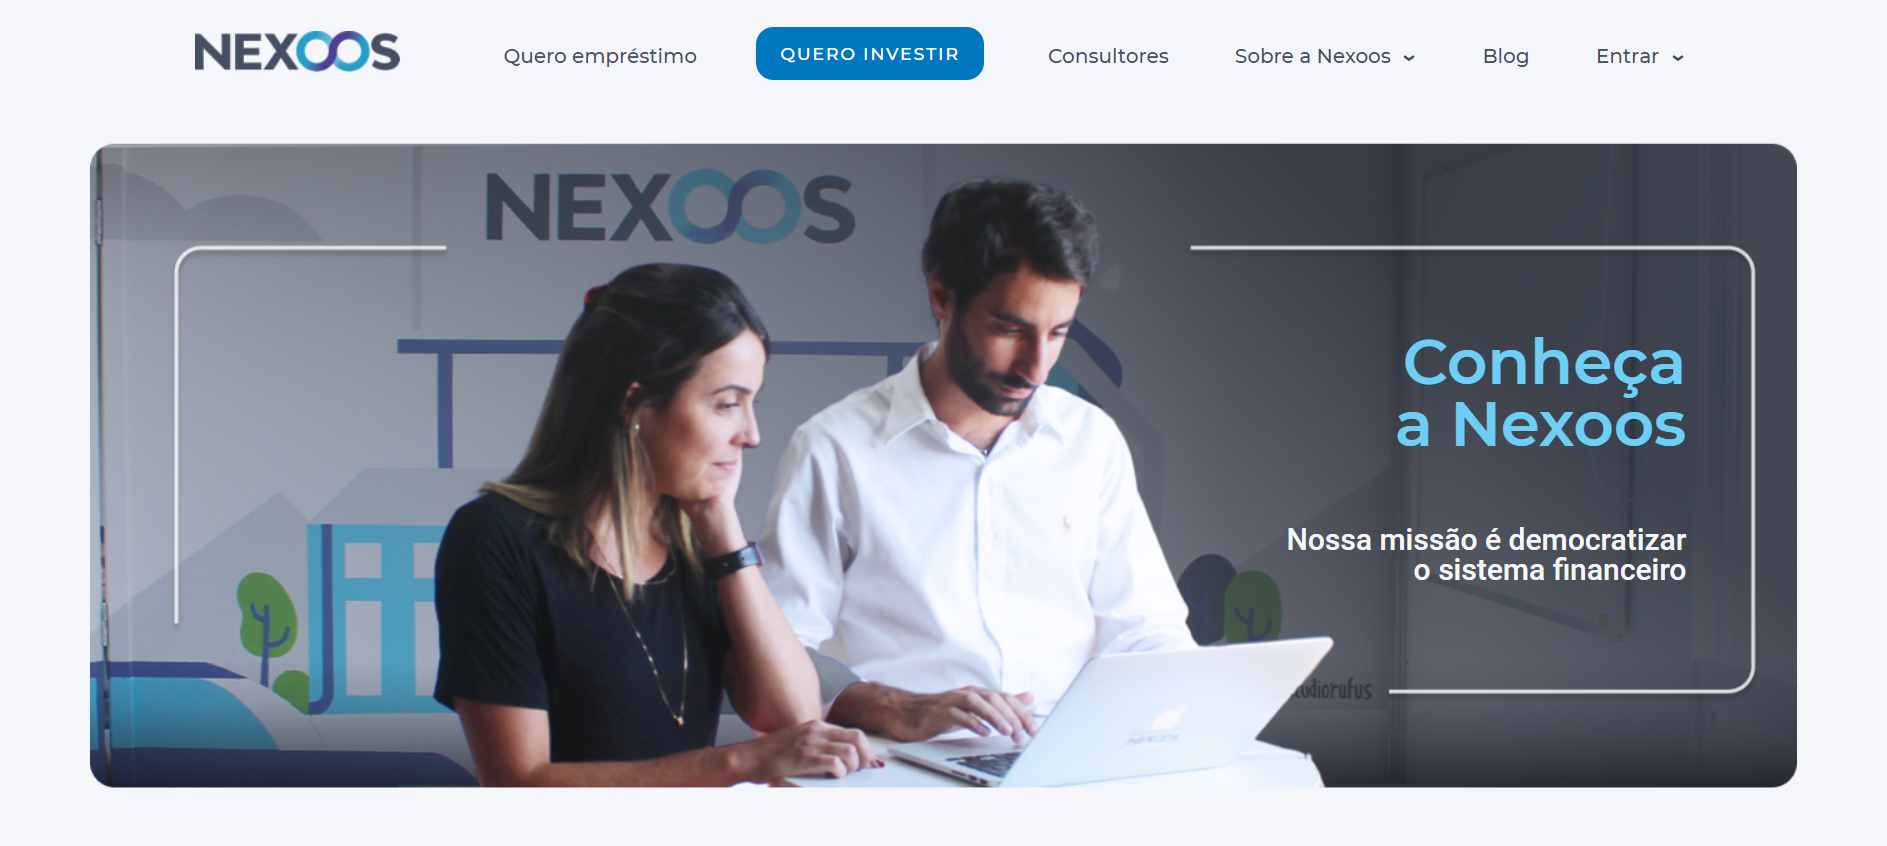 Conheça o empréstimo empresarial Nexoos. Fonte: Nexoos.